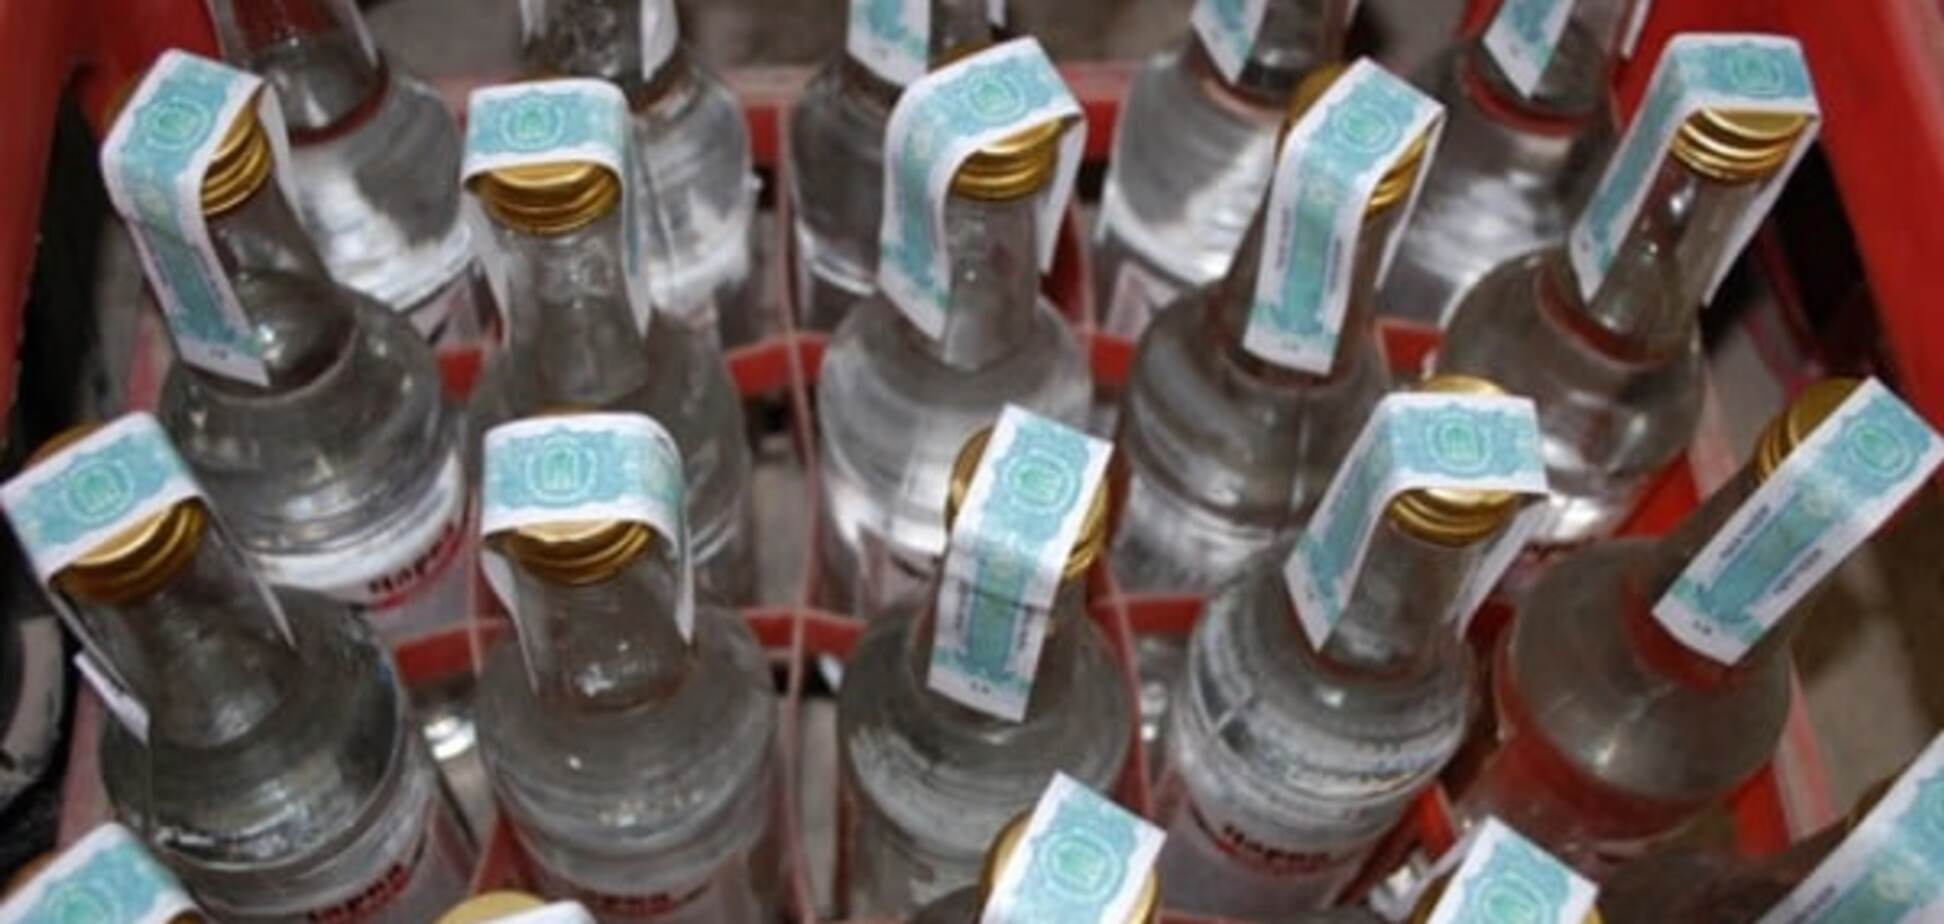 Полиция нашла место продажи некачественной водки